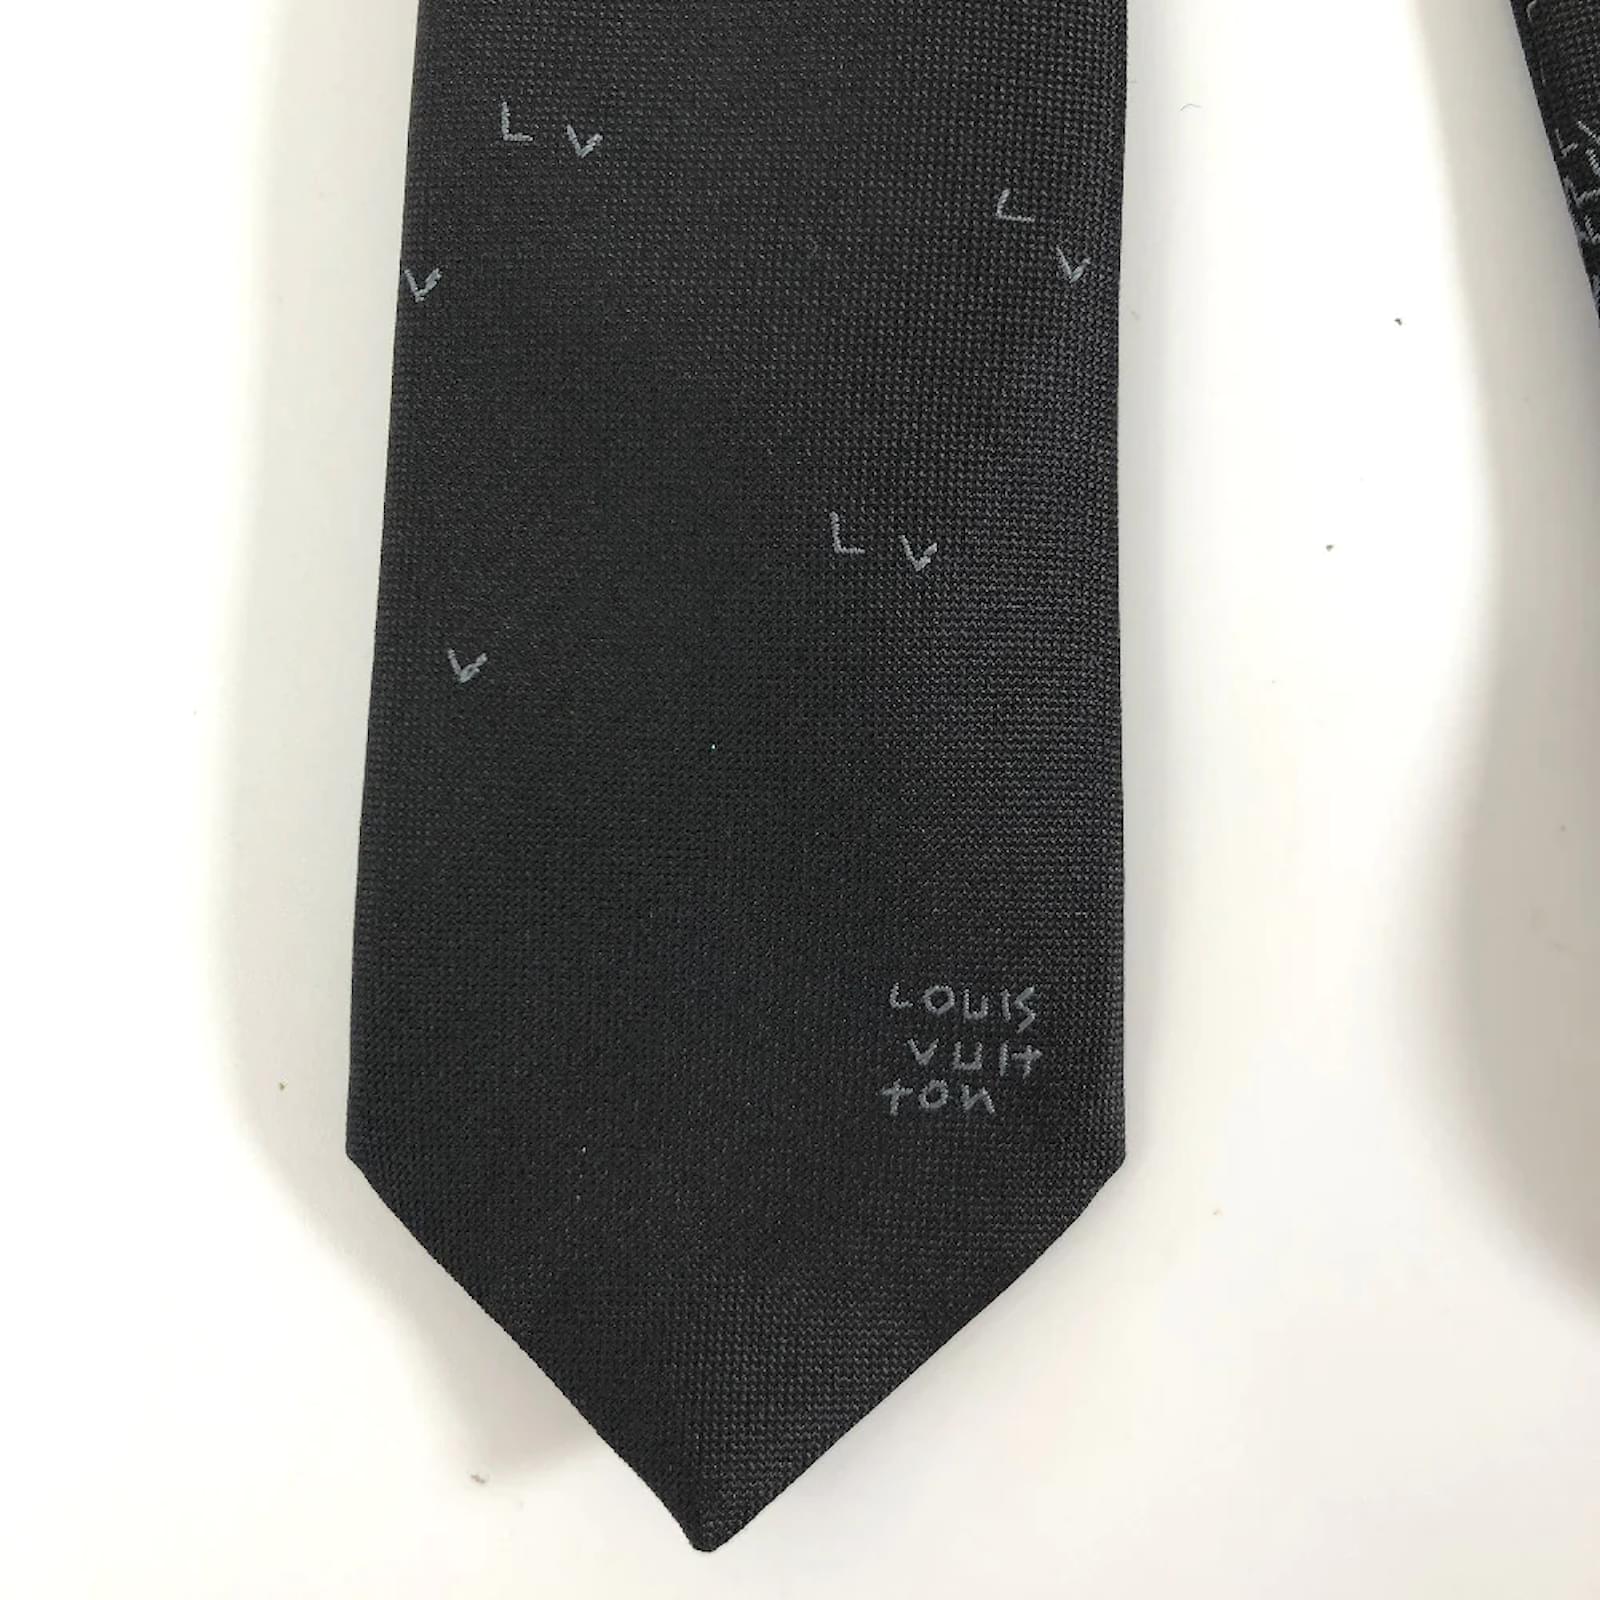 LOUIS VUITTON Monogram Etui 5 Cravat Necktie Case M47535 LV Auth